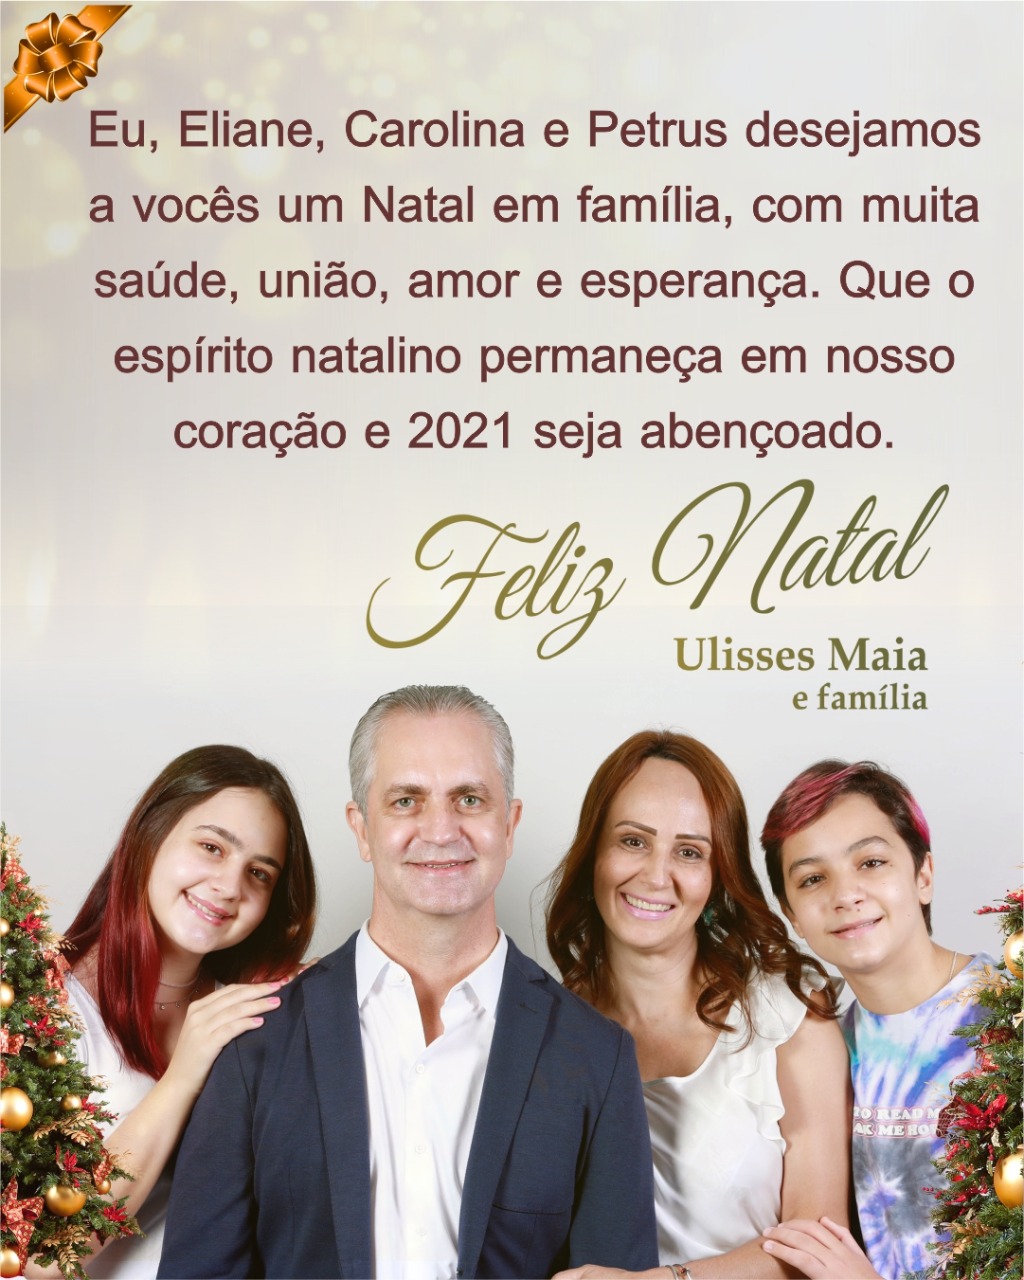 O prefeito de Maringá, Ulisses Maia e família, desejam um Natal de esperança e solidariedade